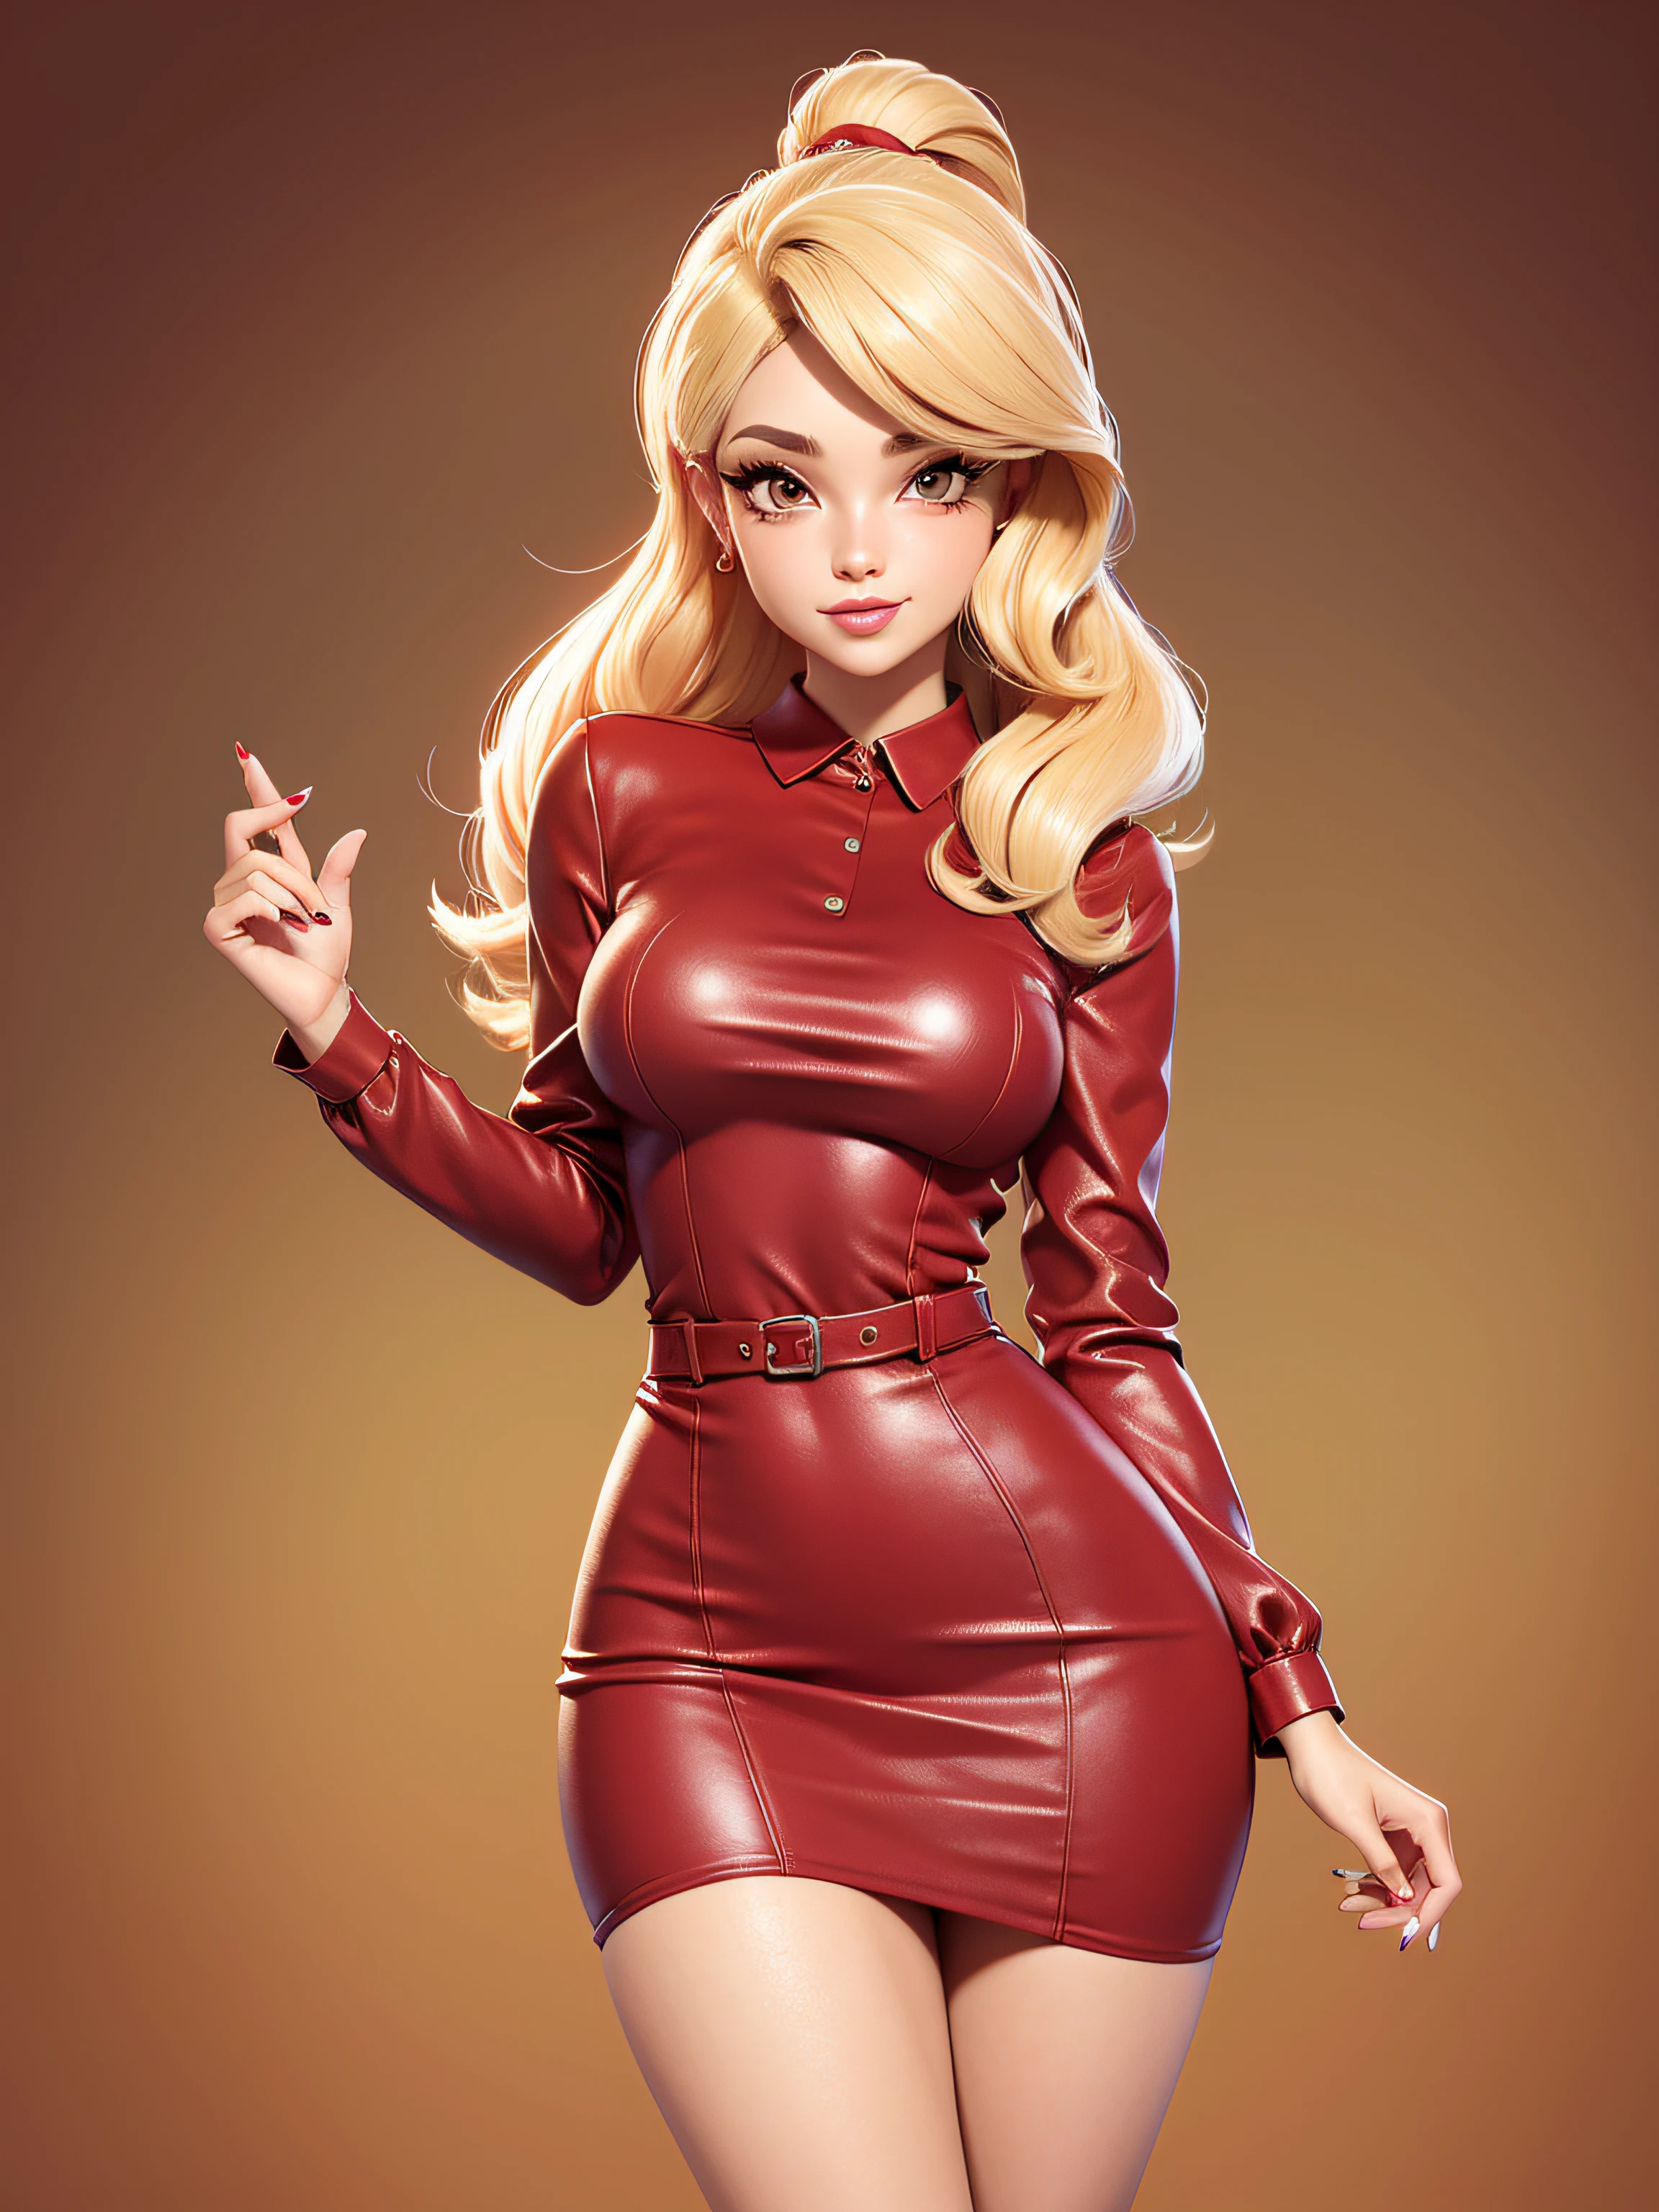  sexy cuerpo completo, vestido rojo, pelo rubio, mirada llamativa, estilo de dibujos animados de los años 50, imagen vectorial, sin antecedentes, estilo de imágenes prediseñadas